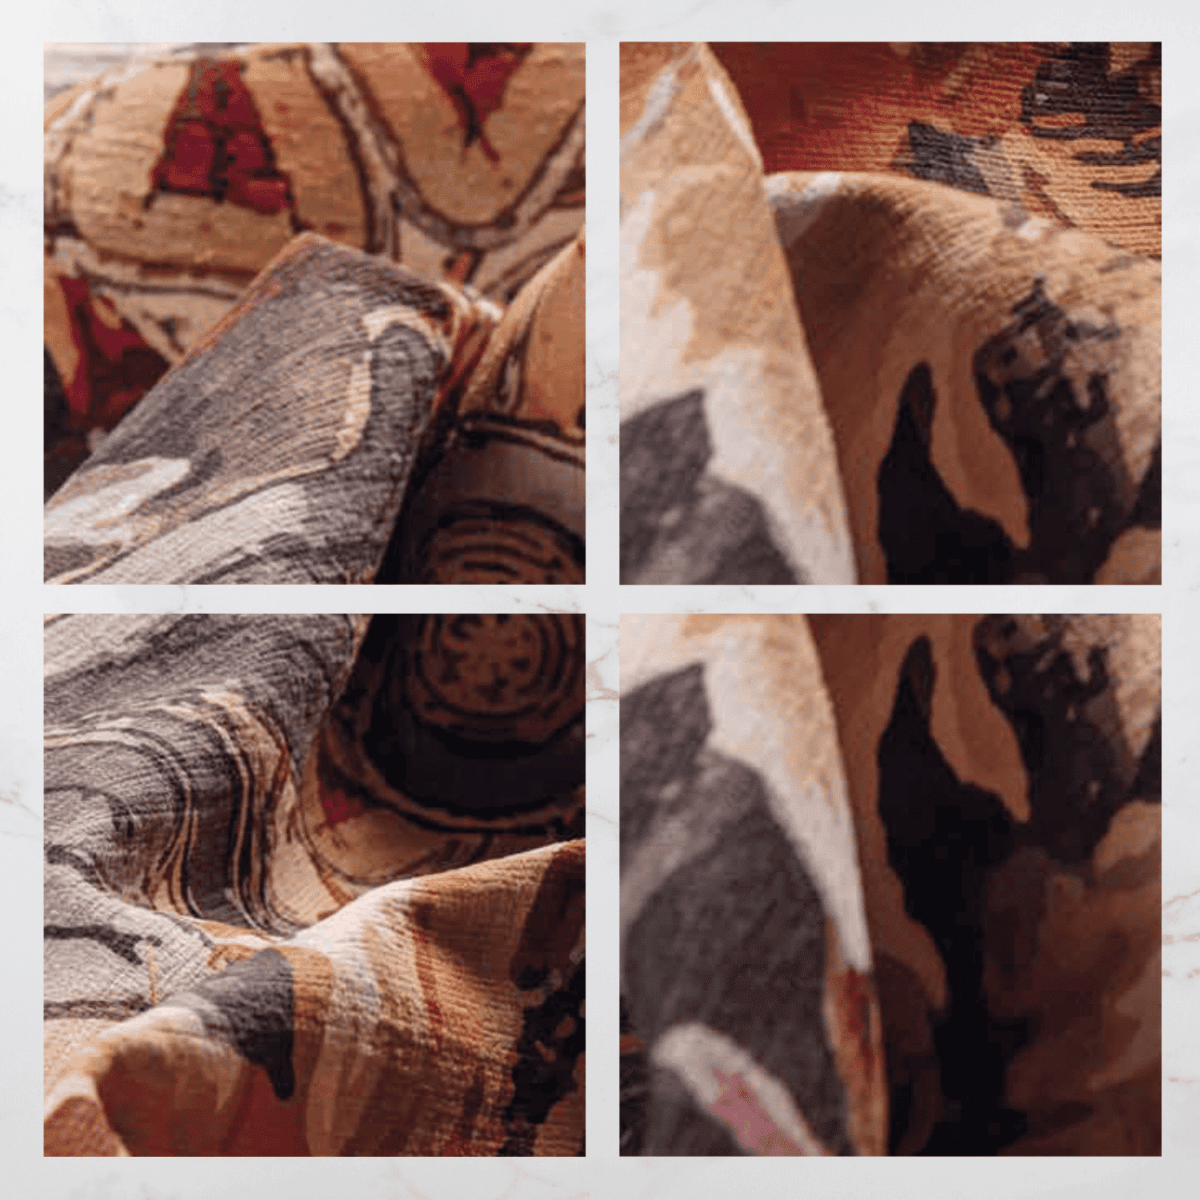 rousseau-tappeto-arredo-emozioni-artista-fiorato-fiori-giganti-oro-multicolor-rococo-settecento-dettagli